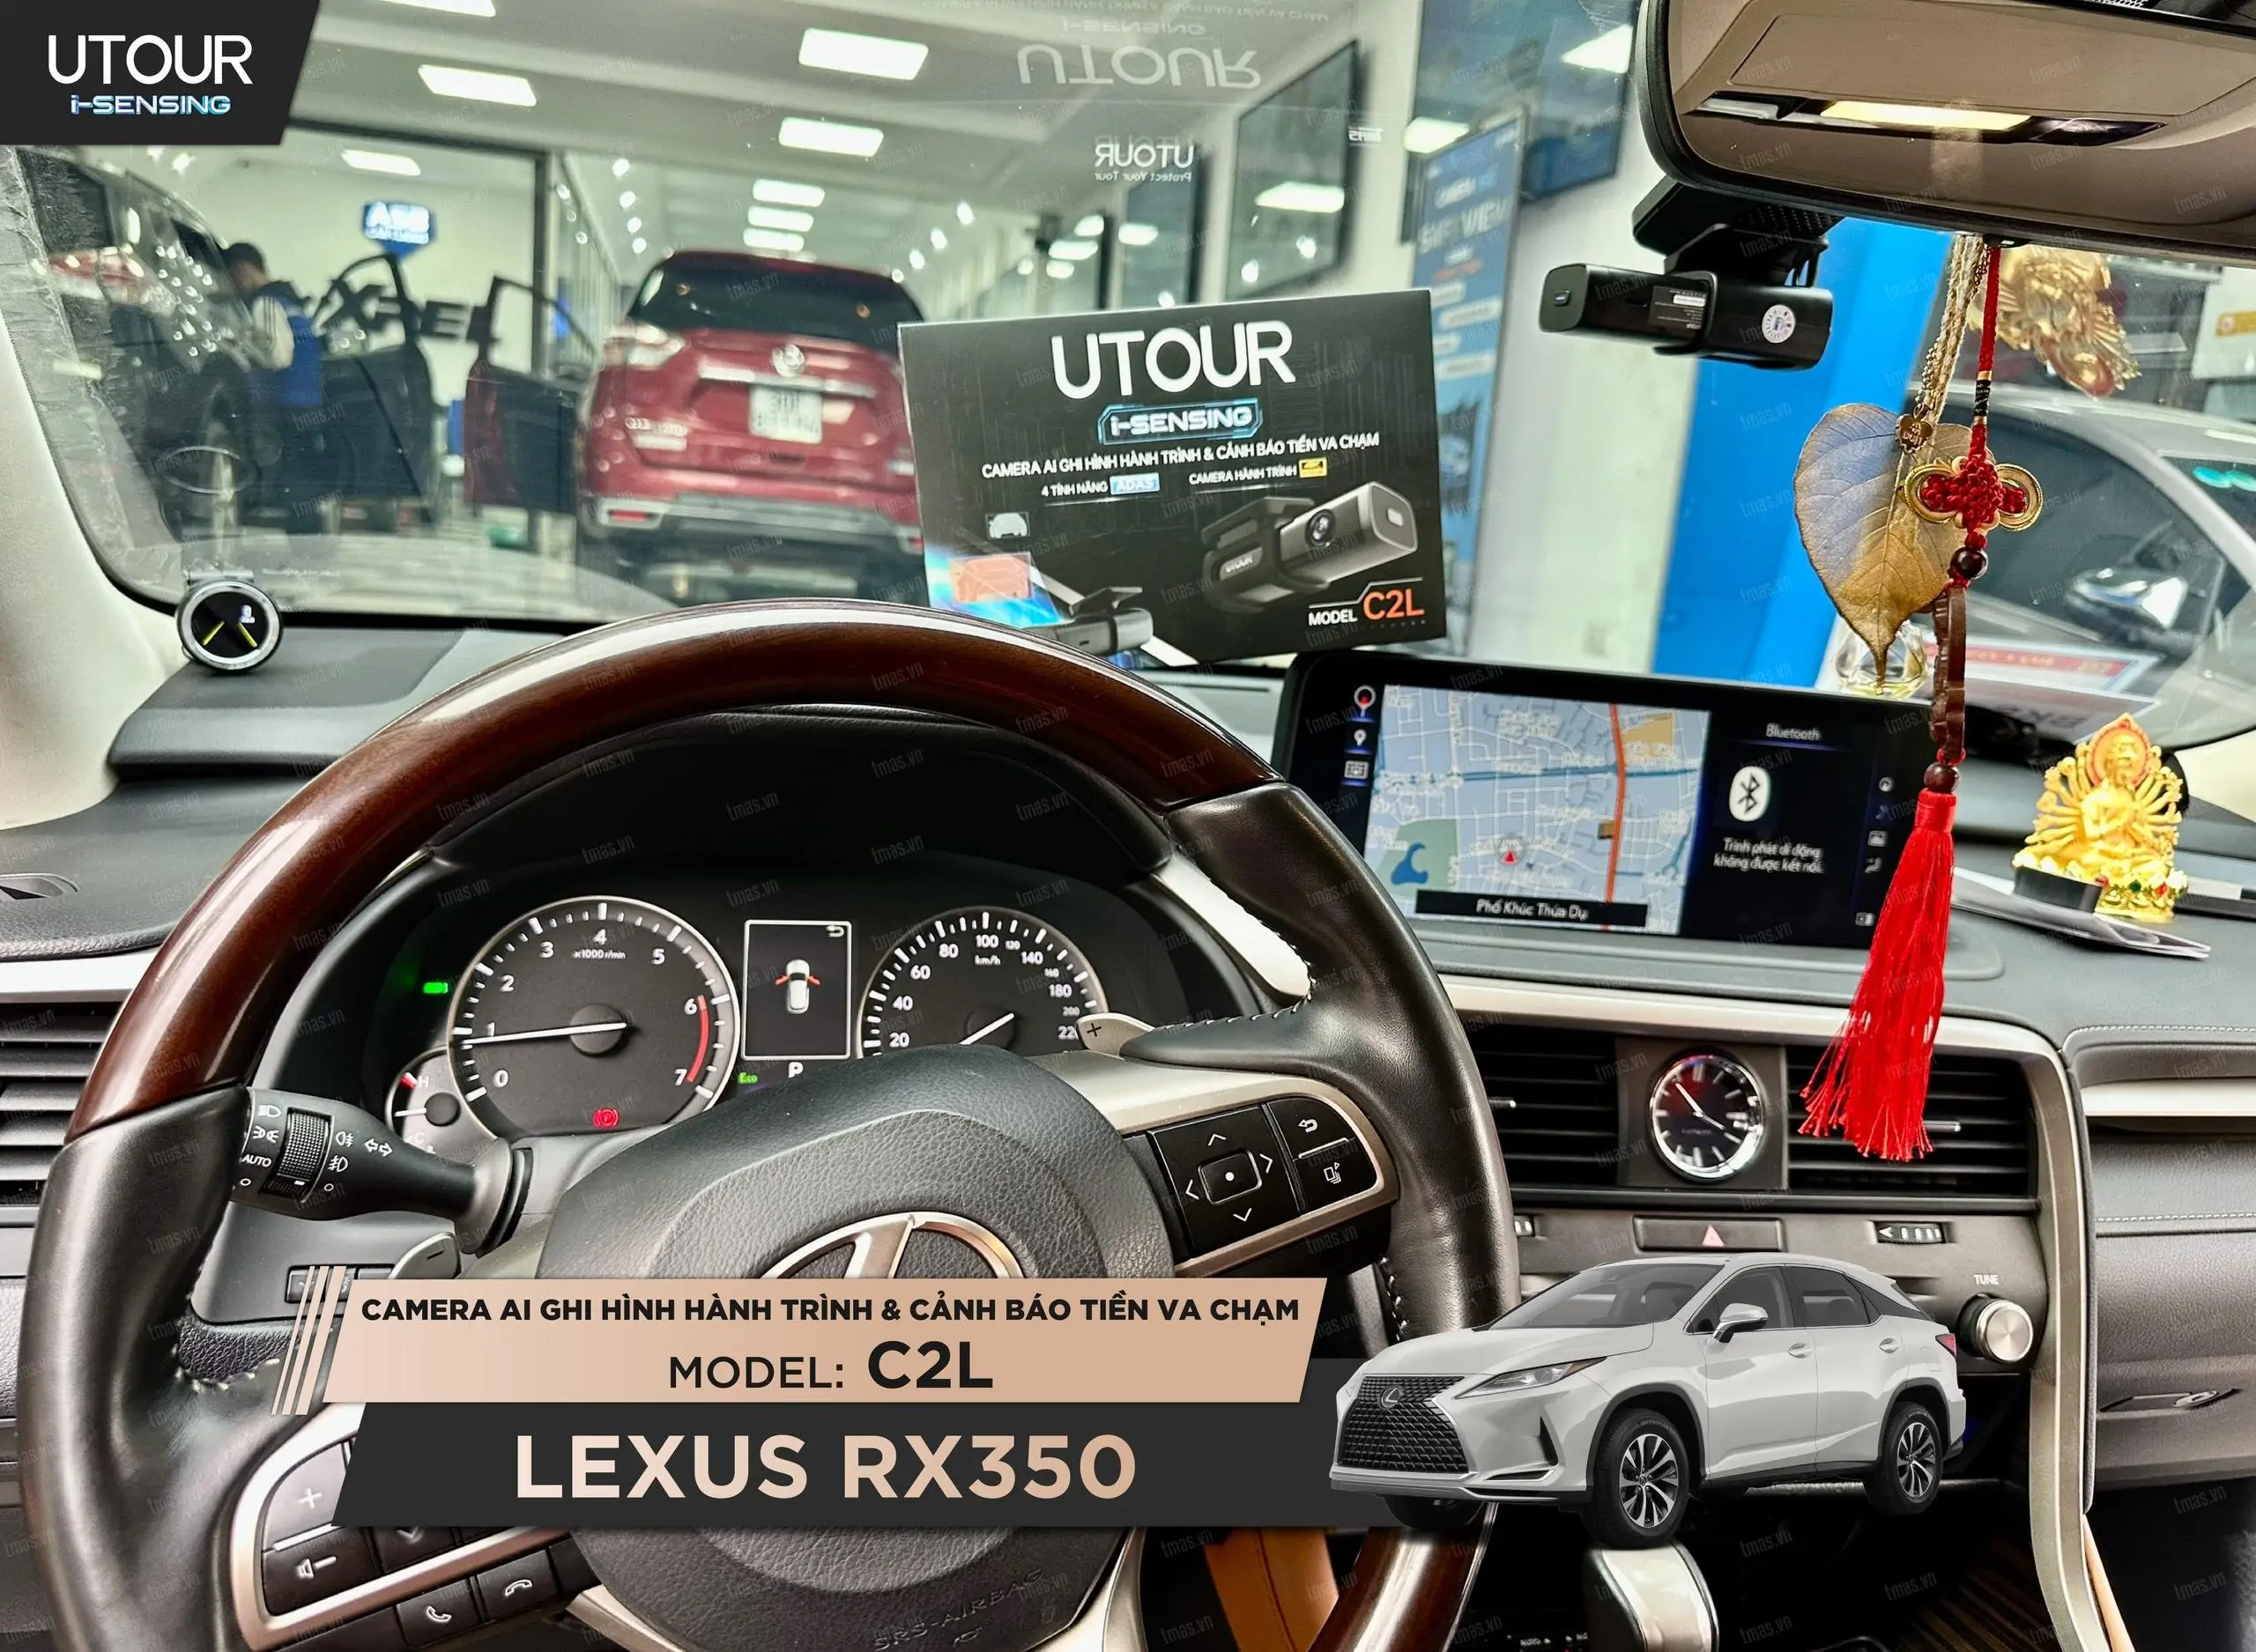 Luxus RX350 nâng cấp Camera hành trình Utour C2L tại Minh Thành Auto